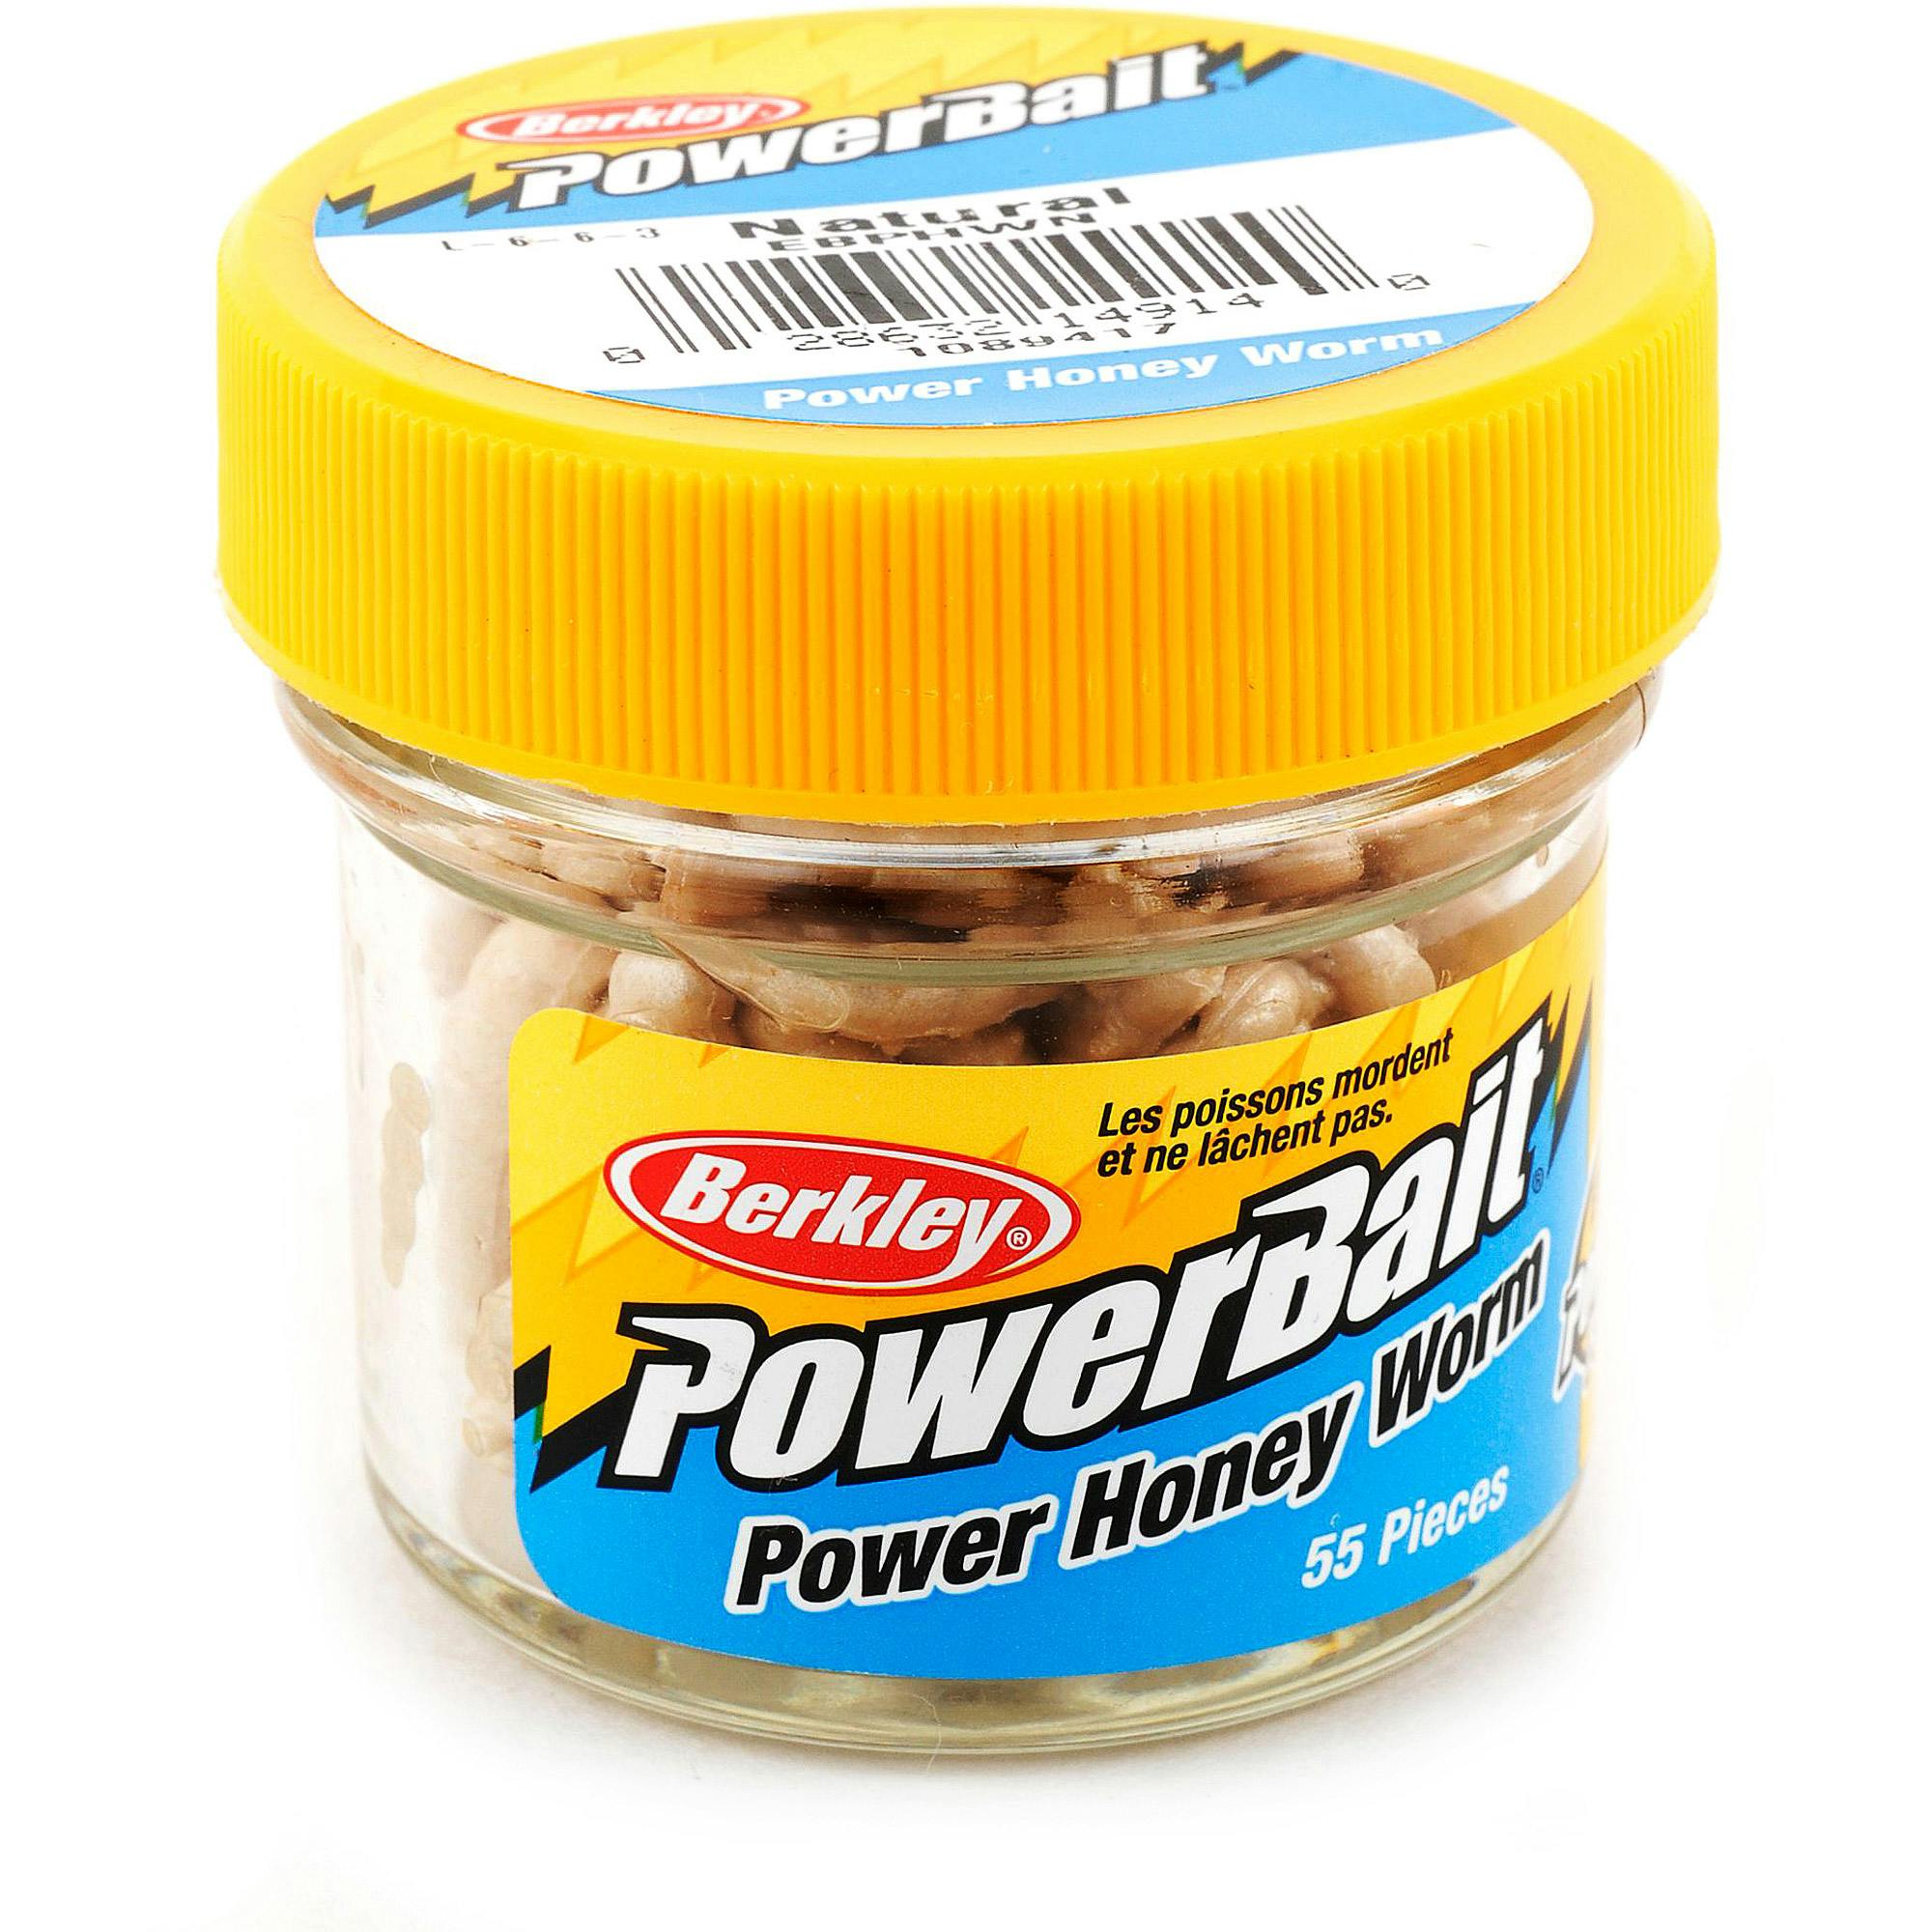 Berkley Powerbait Honey Worm